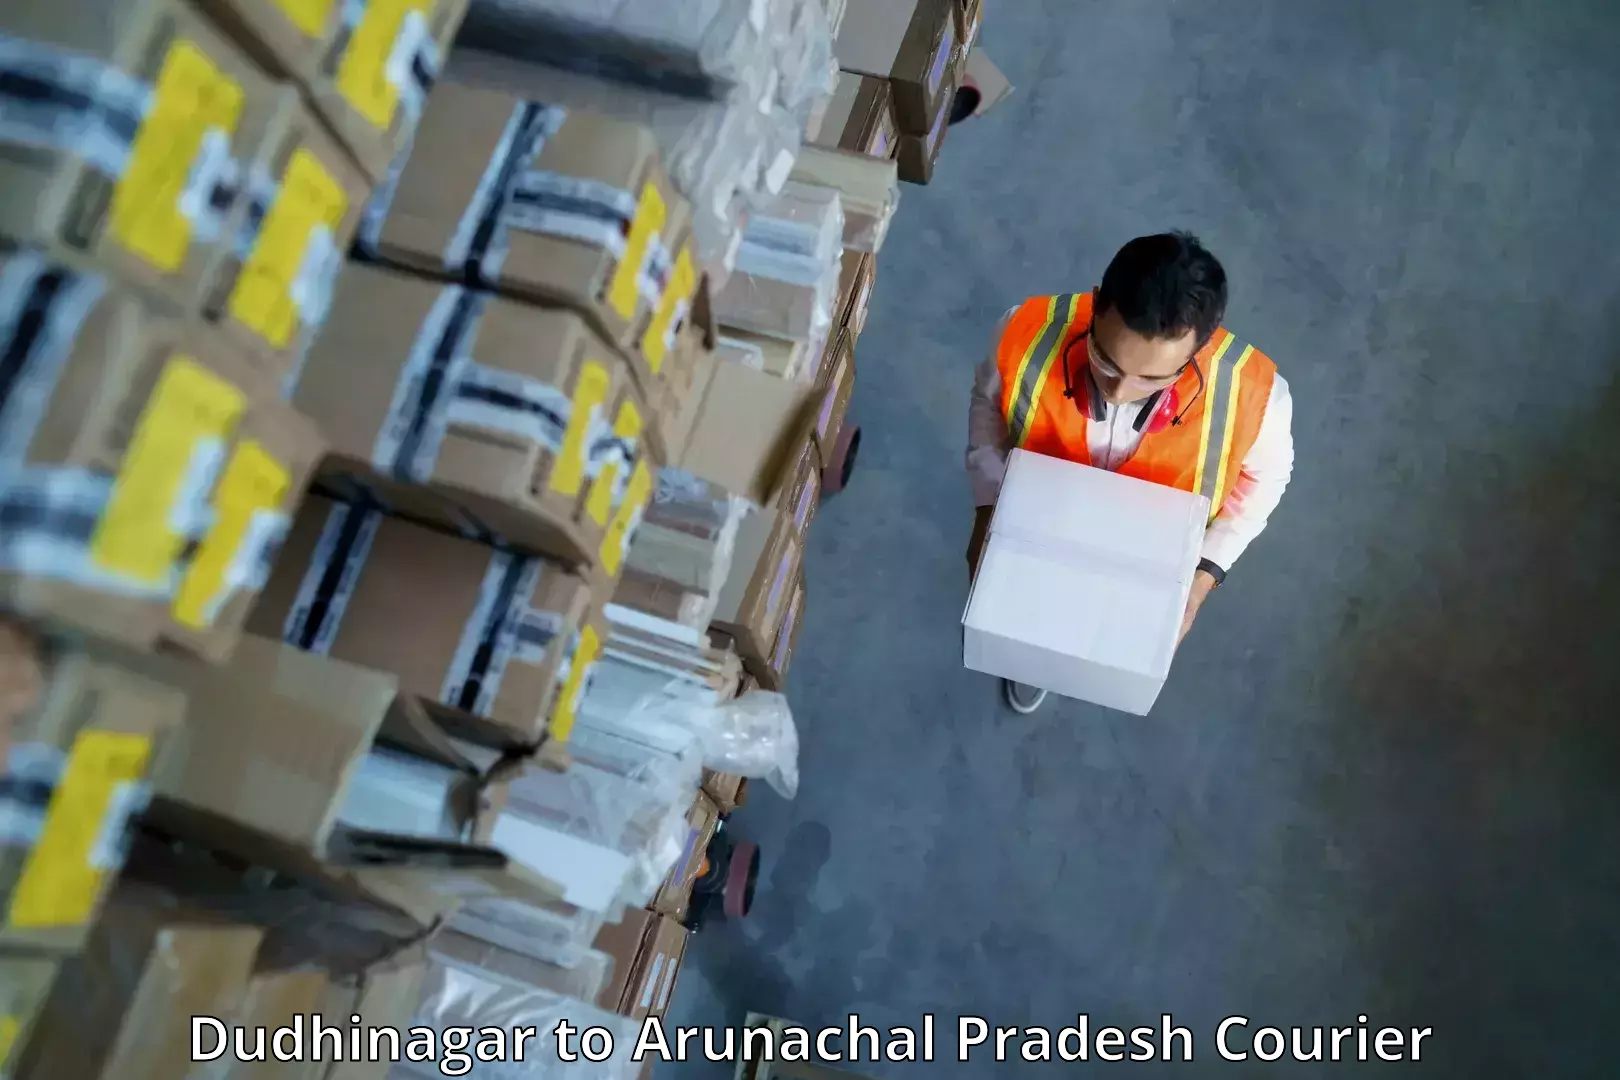 Efficient freight service Dudhinagar to Tezu